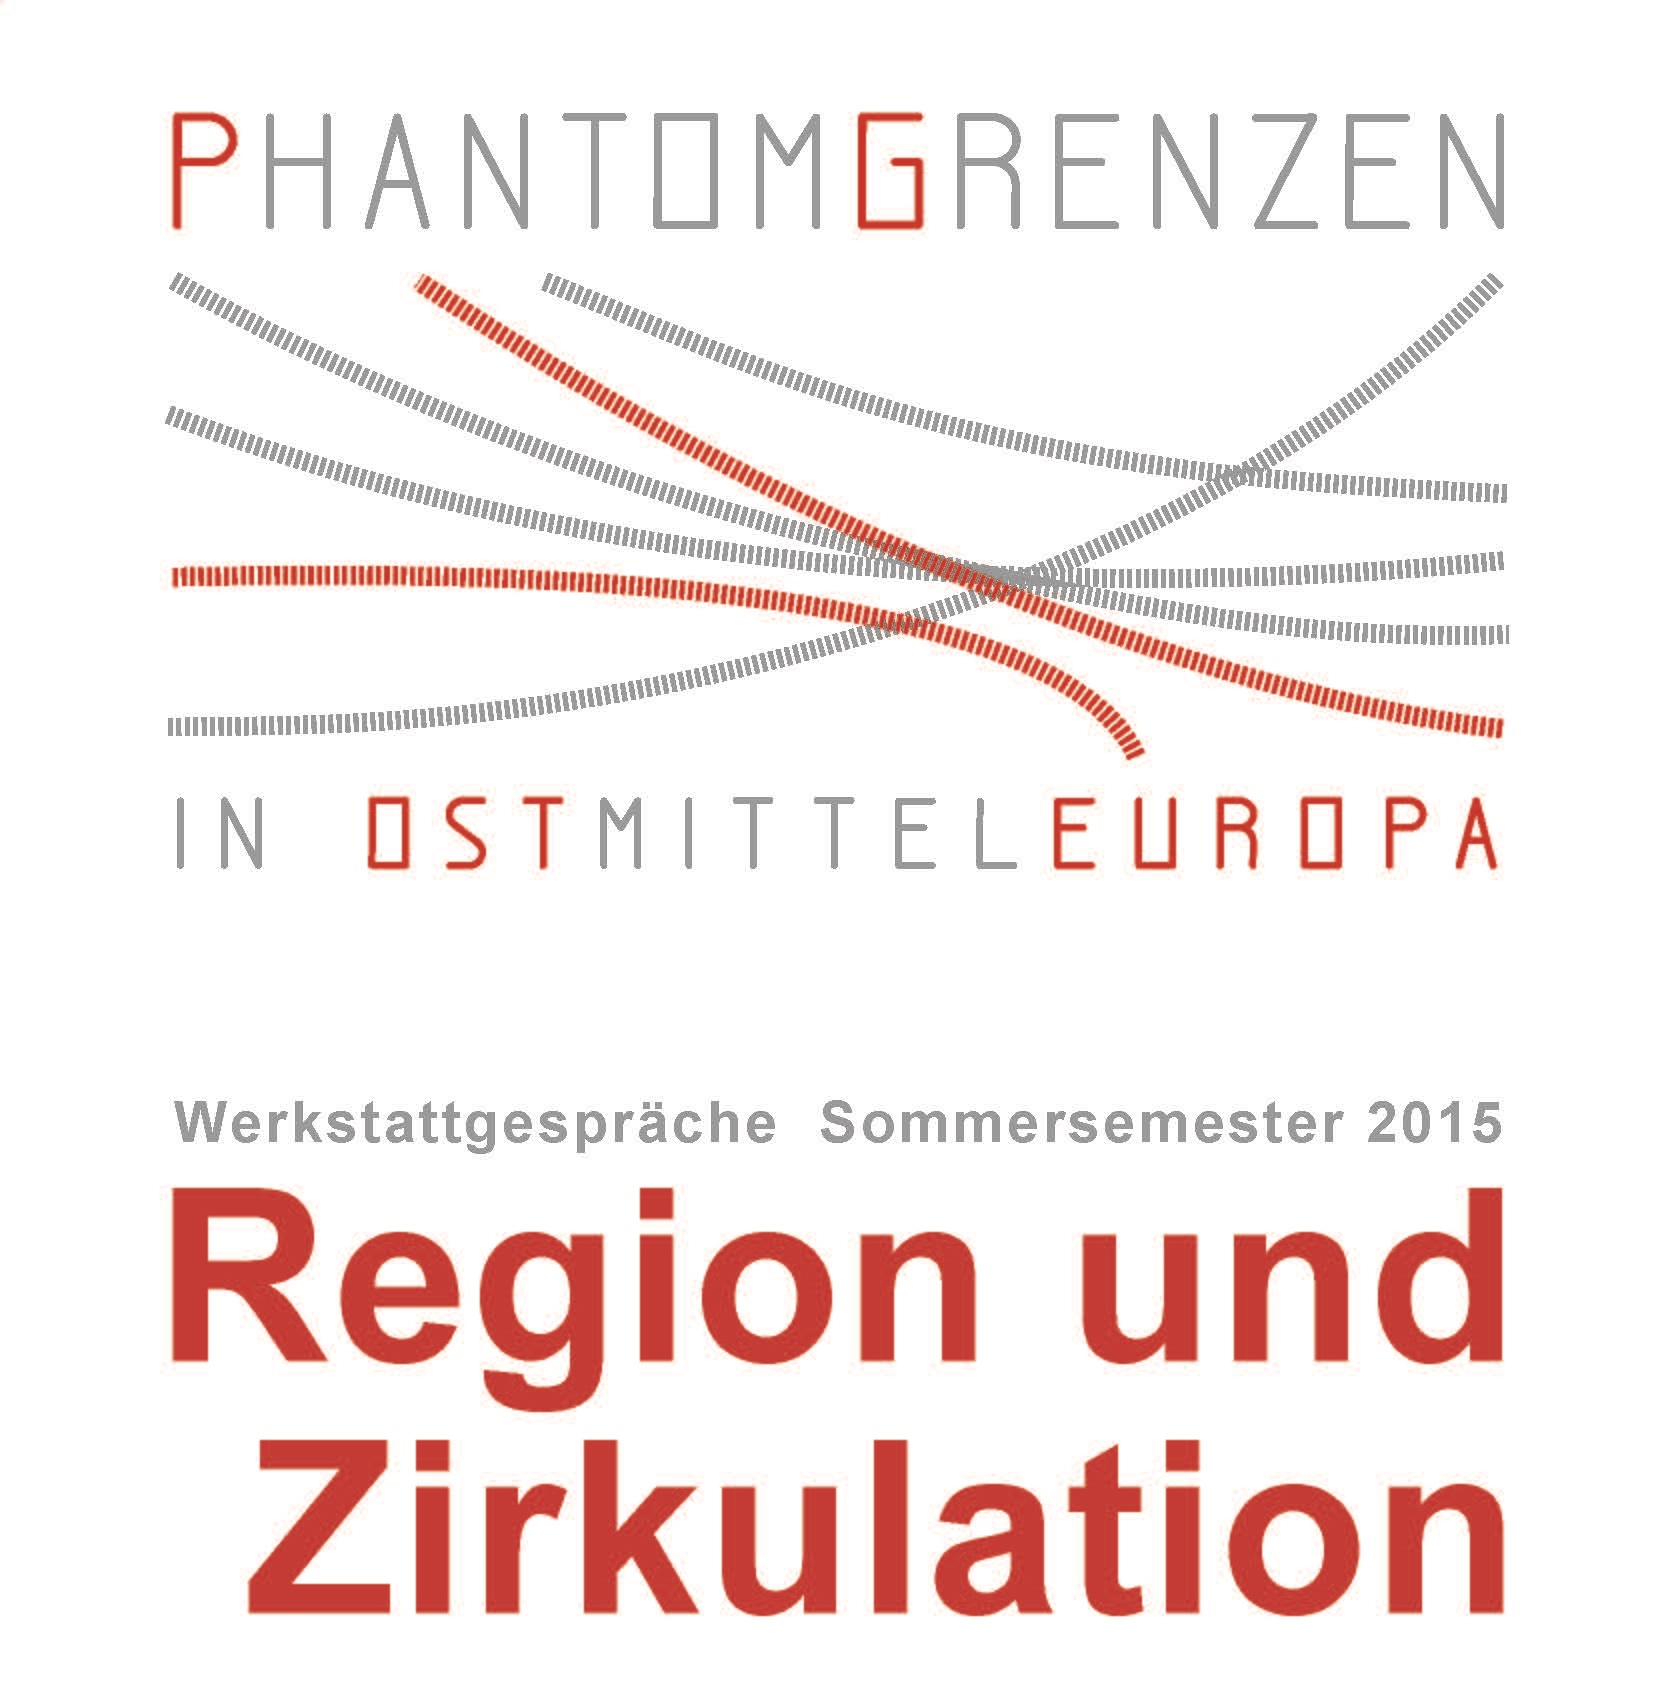 Phantomgrenzen_Werkstattgespräche_SoSe2015_Webflyer.jpg